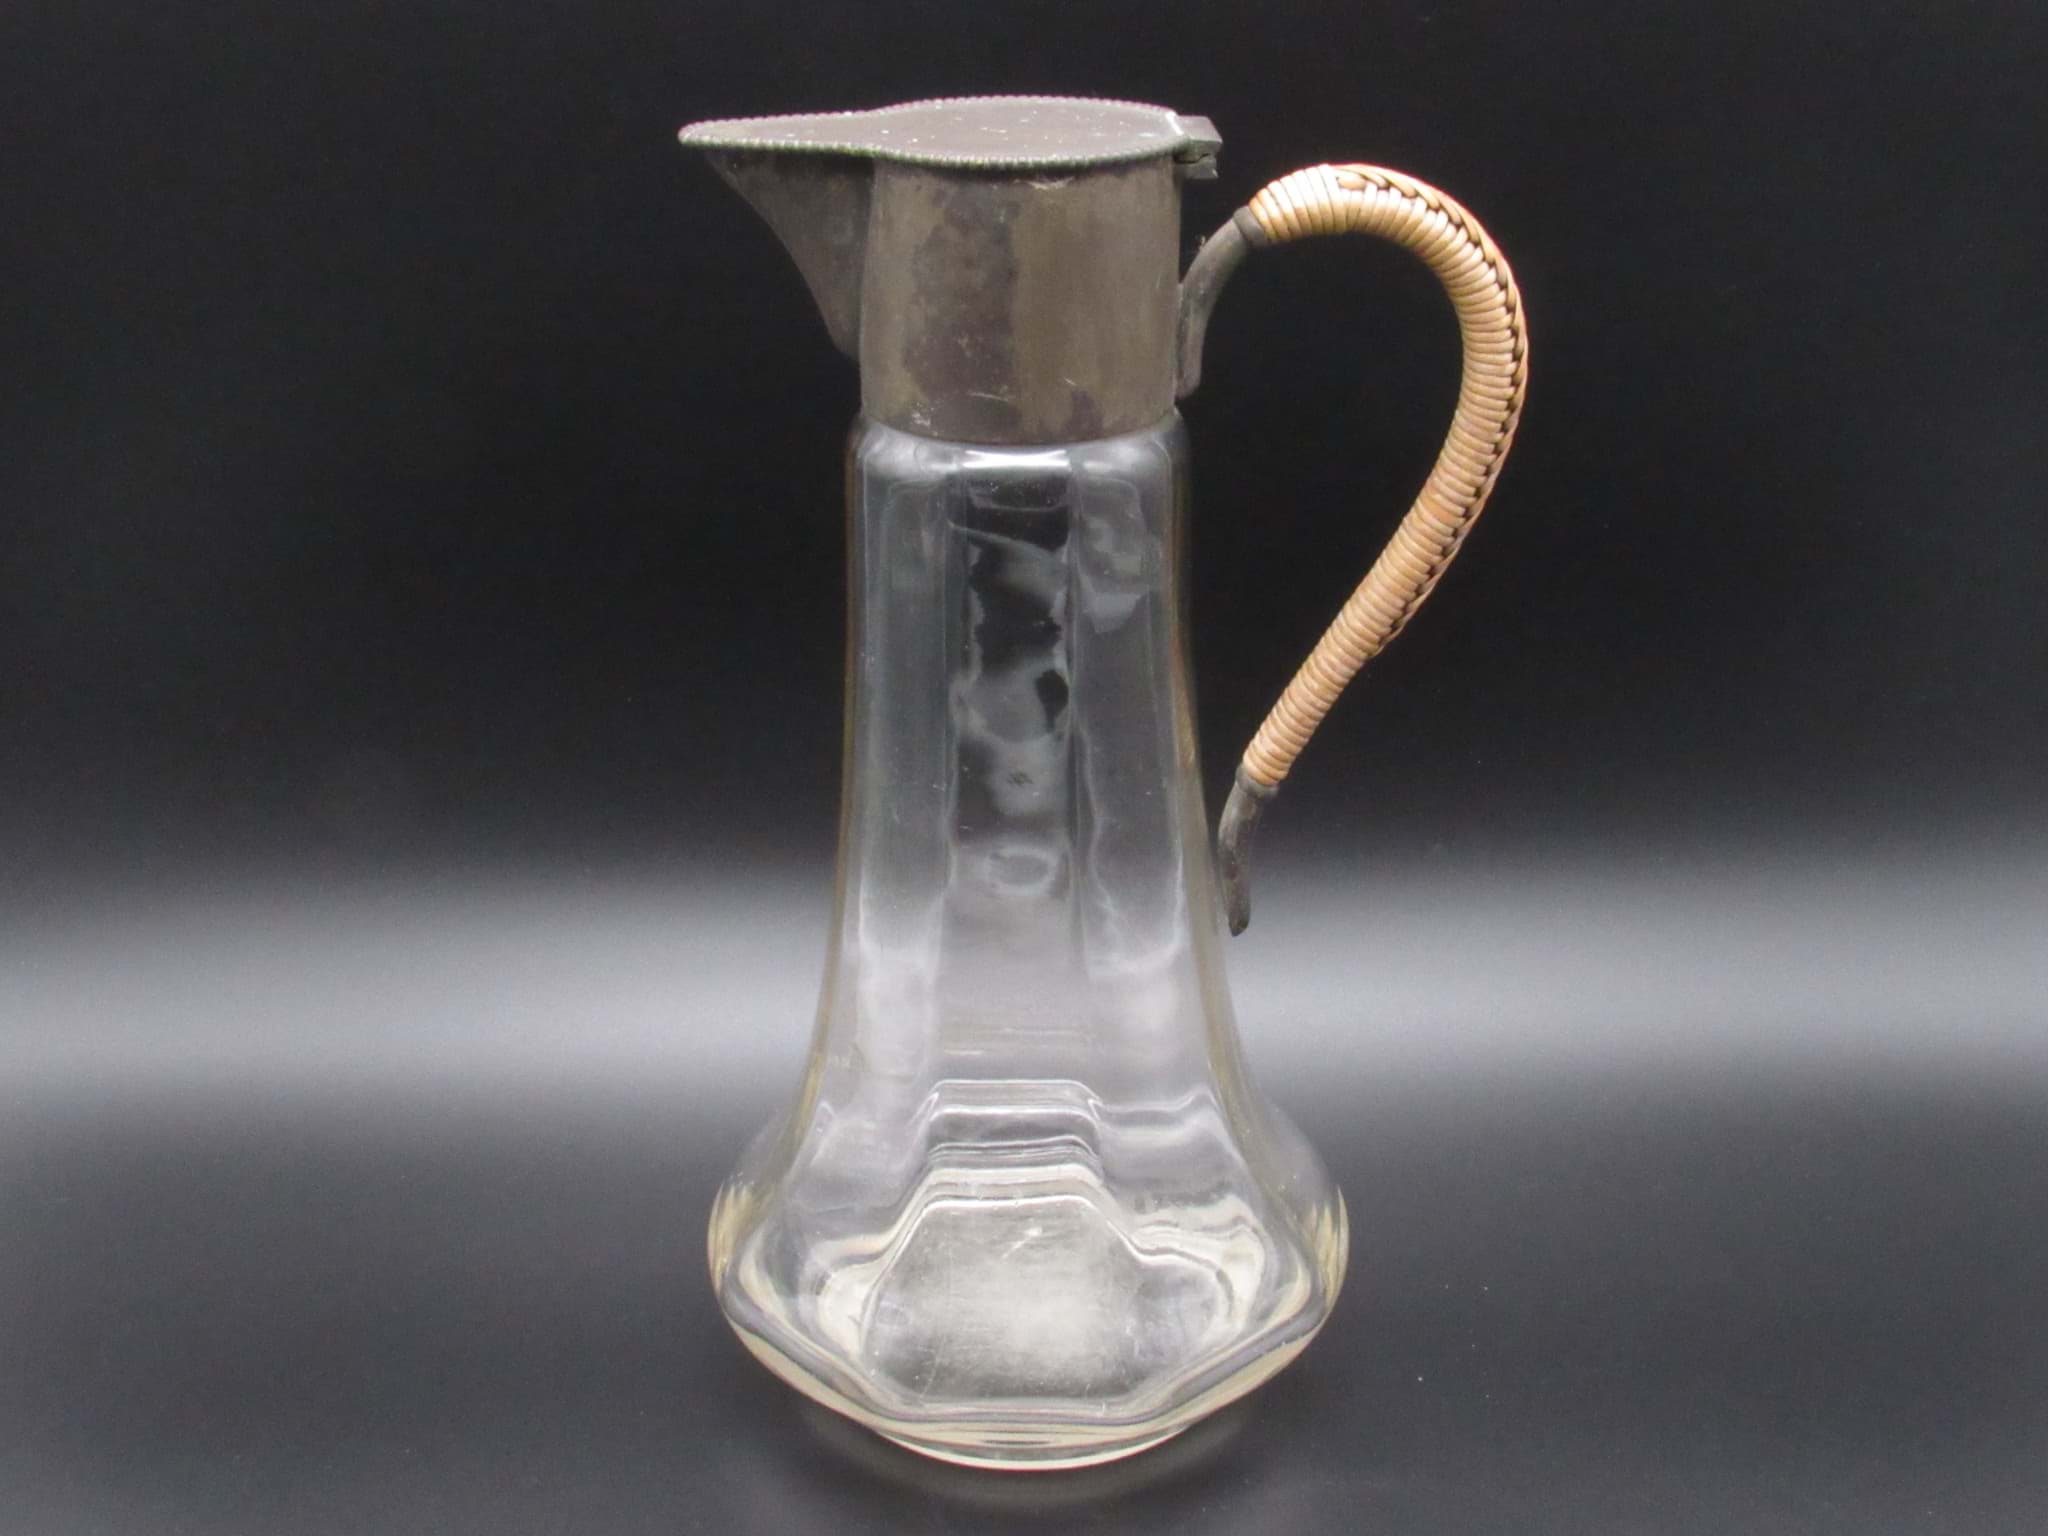 Image de Kalte Ente / Schankkanne Glas mit Metallmontur, um 1930, Sammlerstück